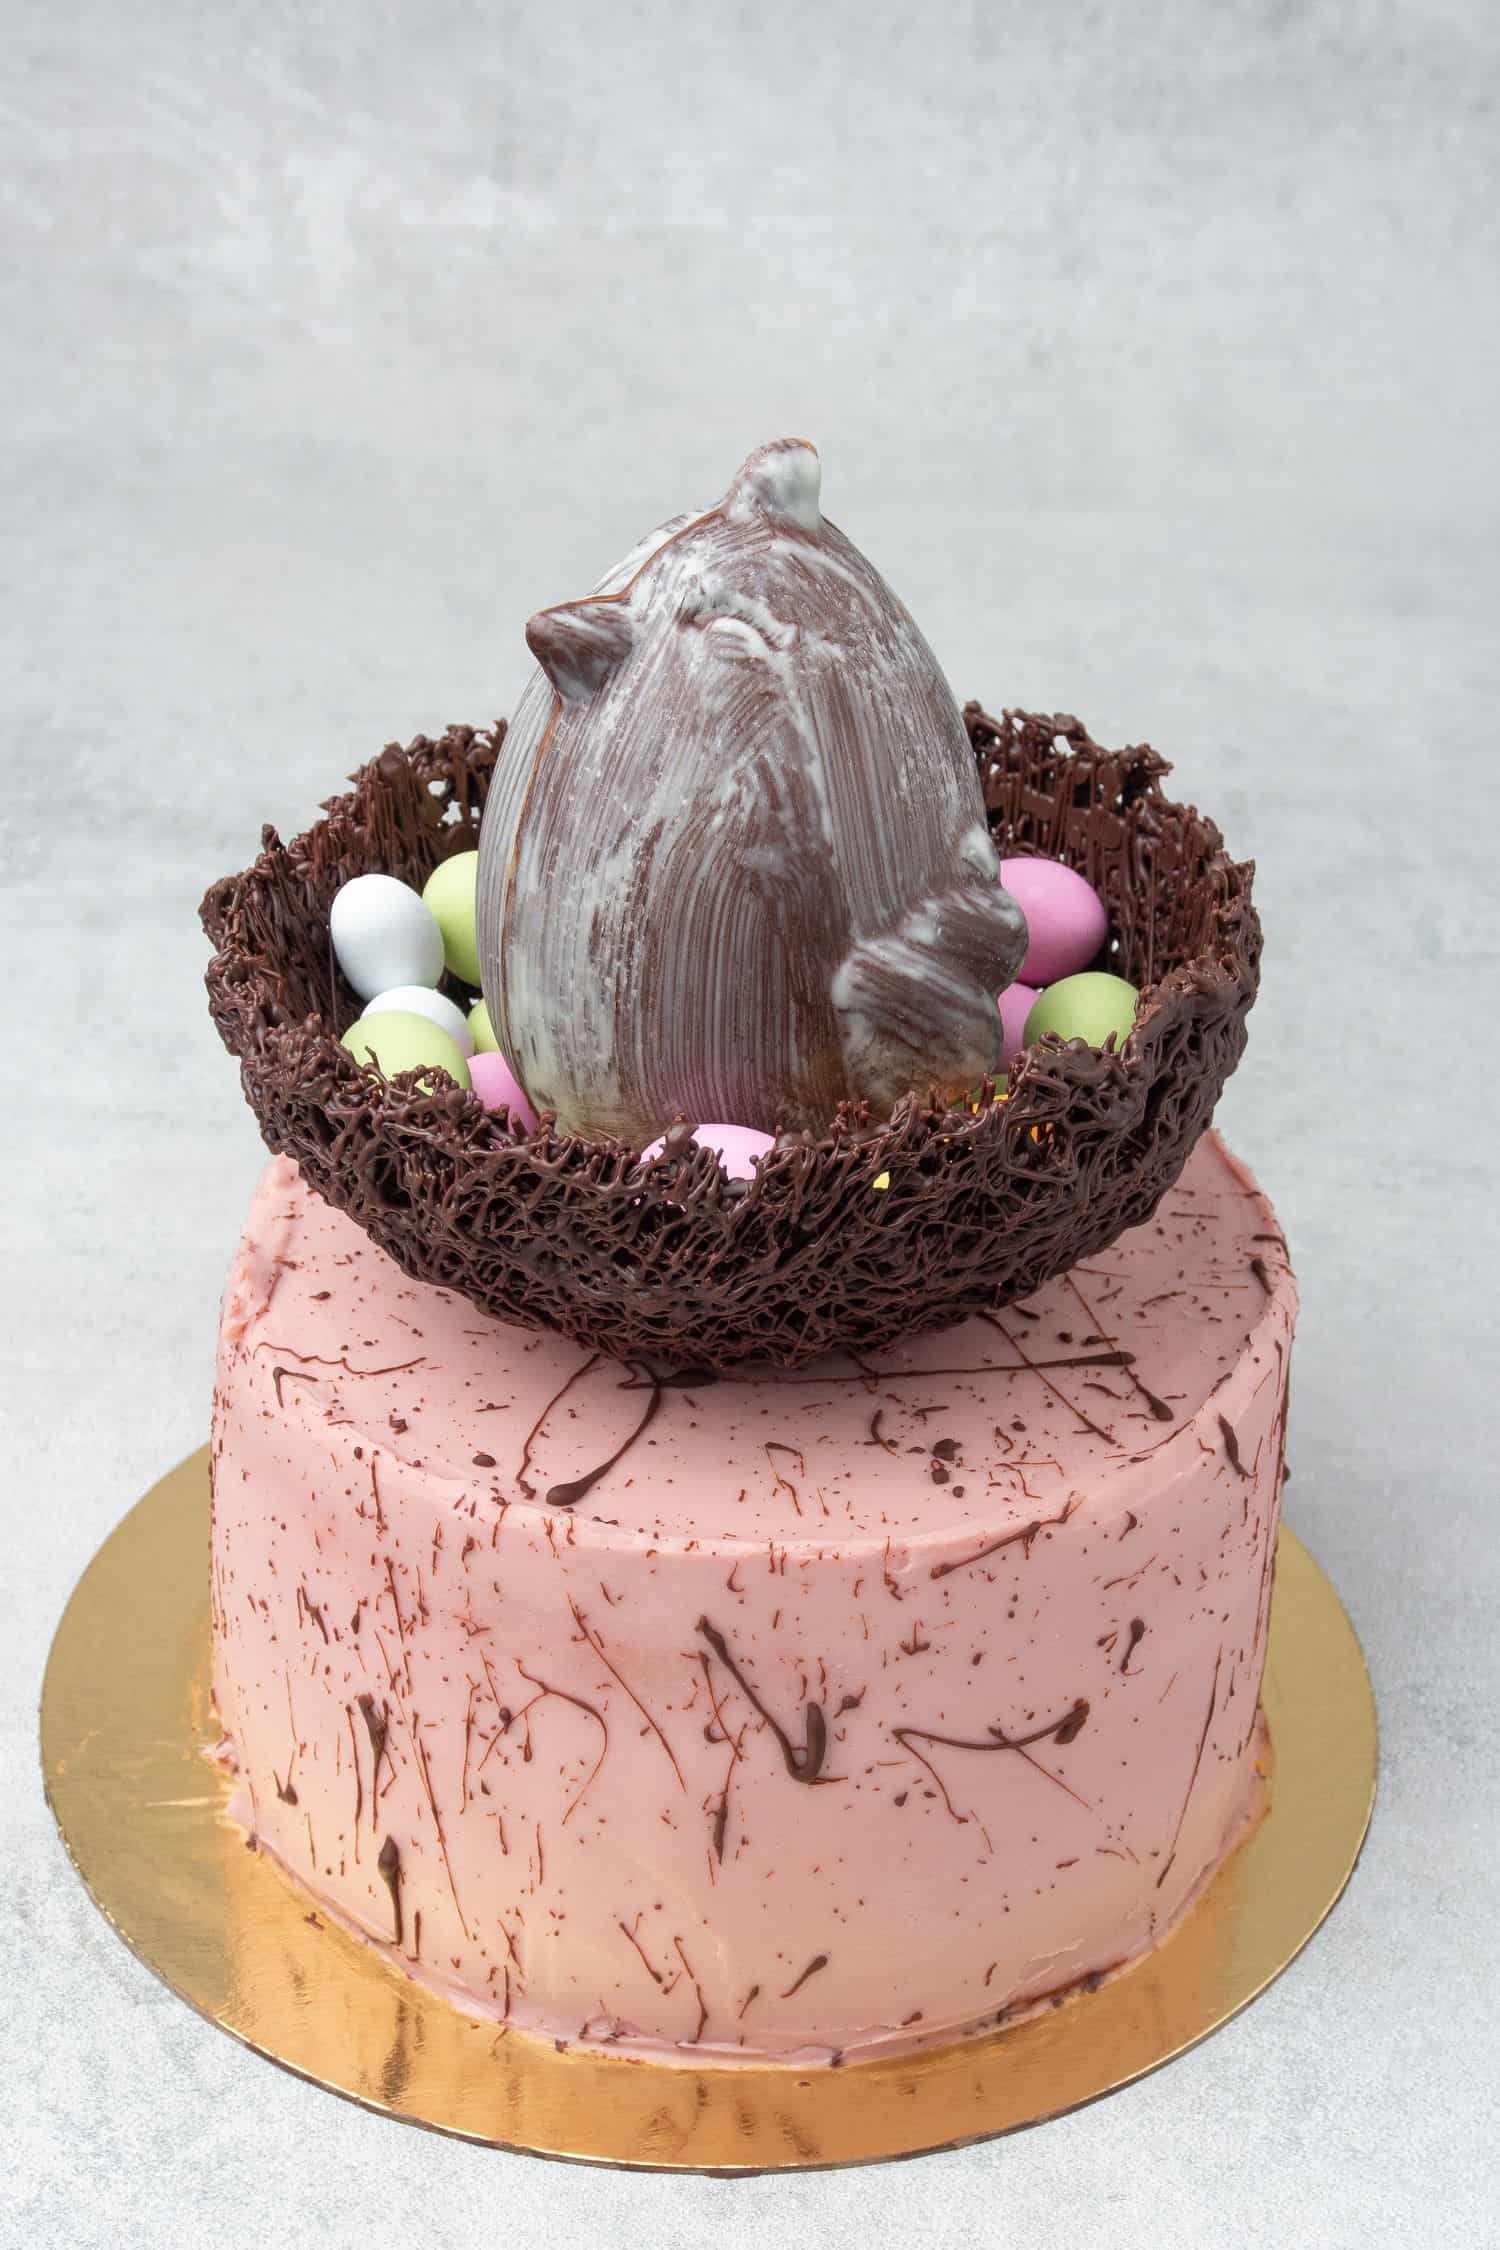 Speckled Easter cake